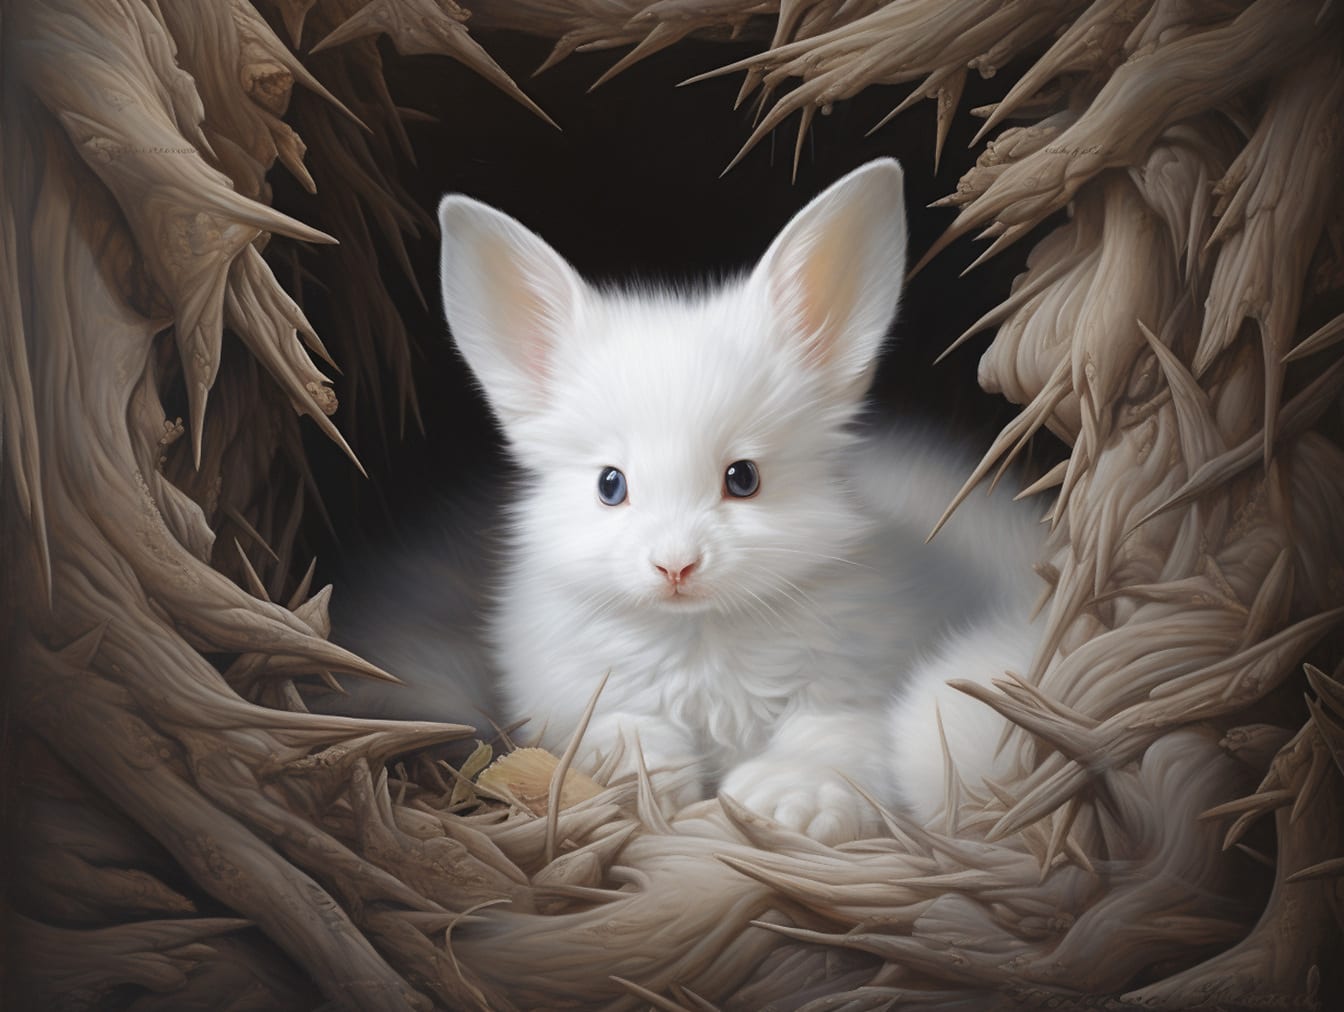 Fantasy stvorenie biely zajačik-klitten s veľkými ušami